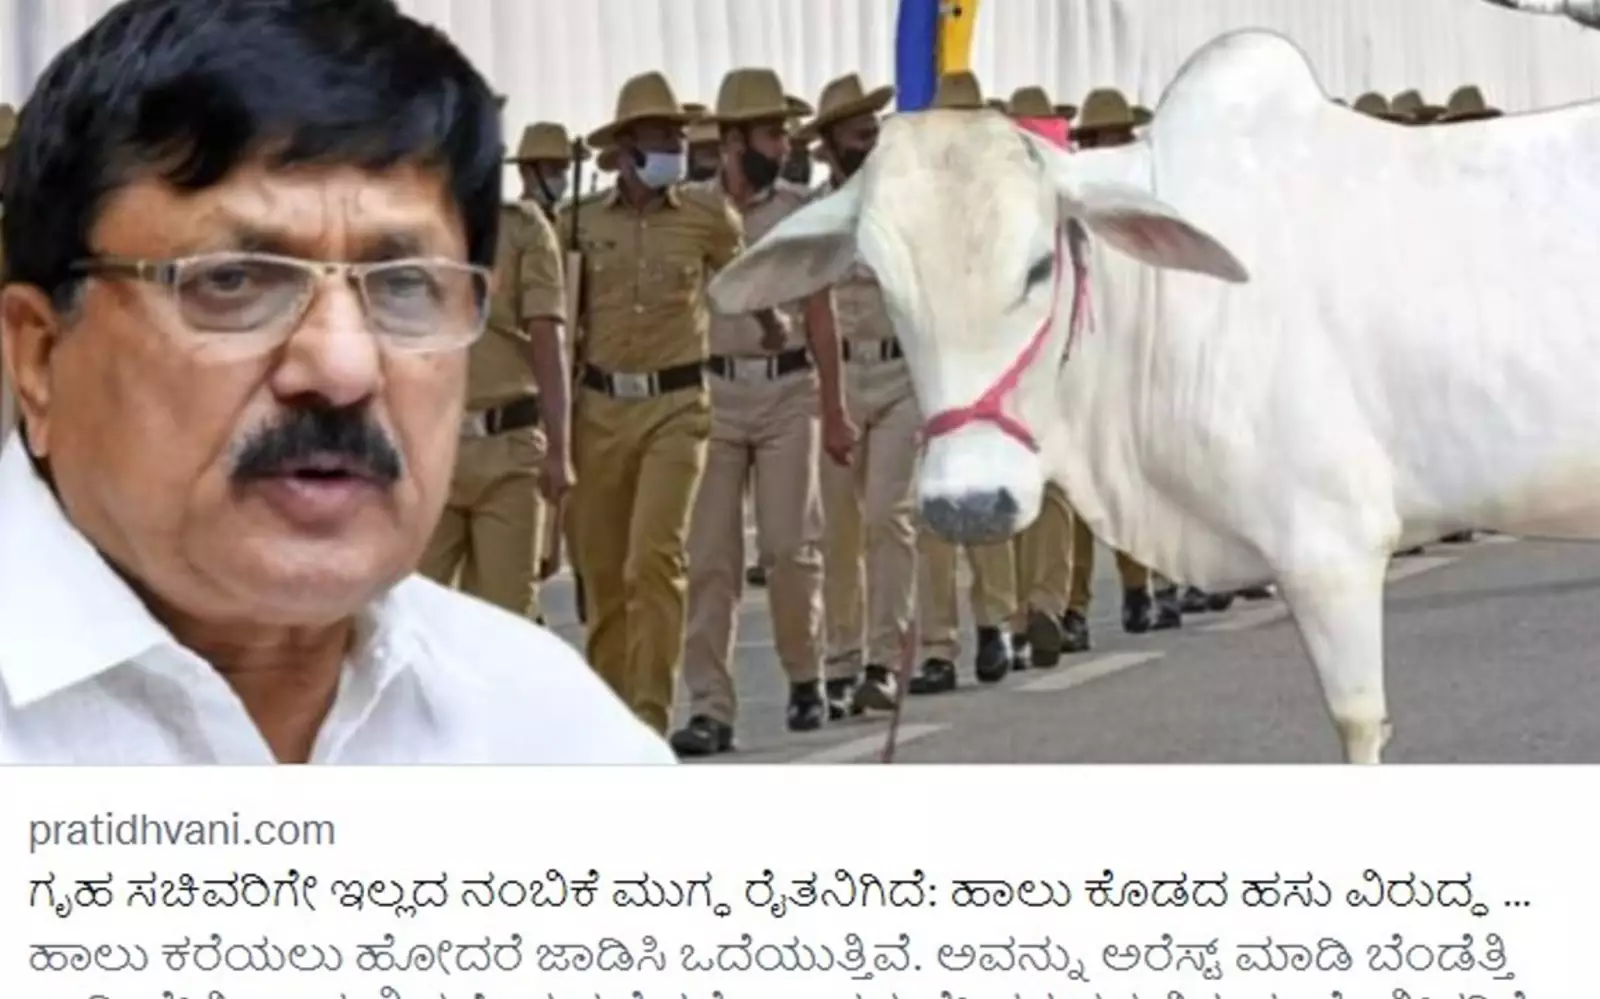 Индиец попросил сотрудников полиции убедить коров снова начать давать молоко.